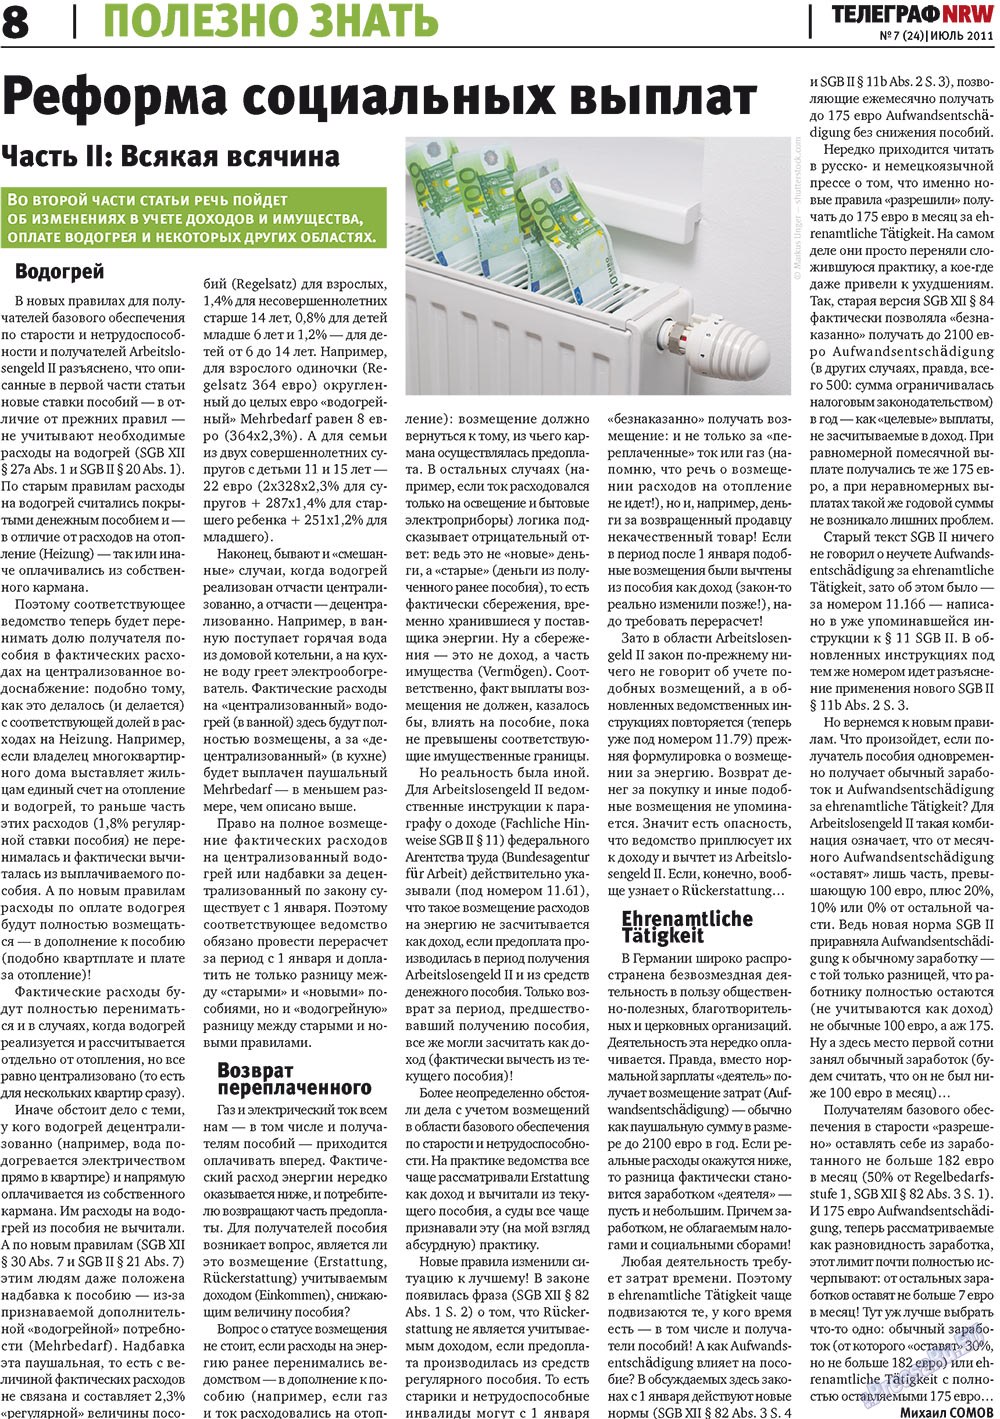 Telegraf NRW (Zeitung). 2011 Jahr, Ausgabe 7, Seite 8